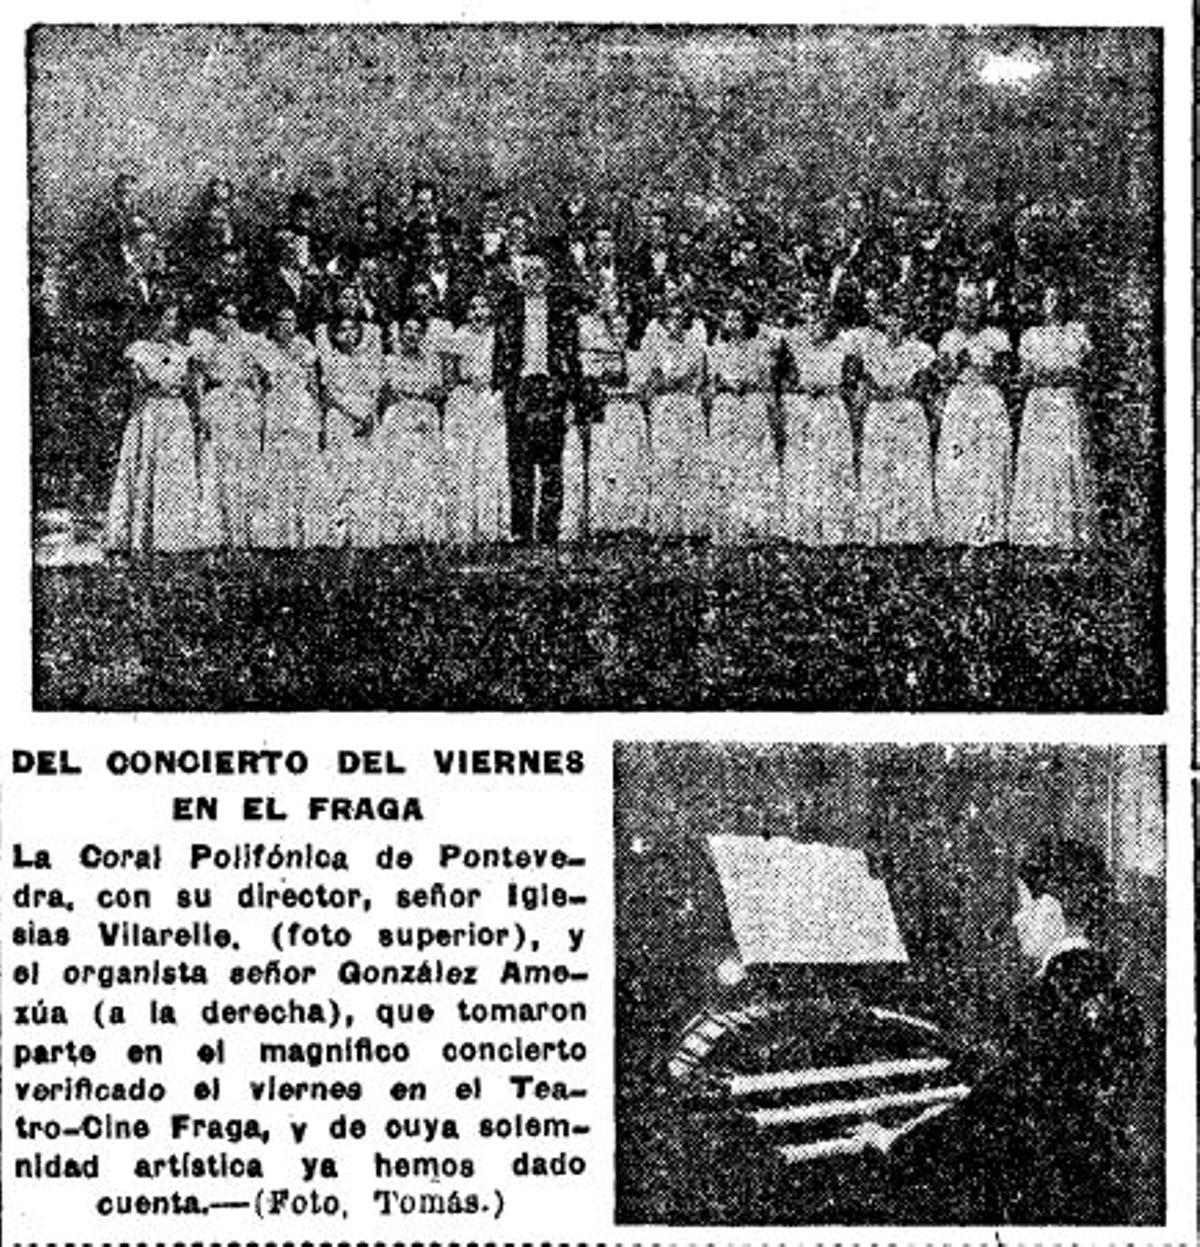 Breve crónica publicada en FARO en 1949 con una foto de Amezúa inaugurando el instrumento monumental.